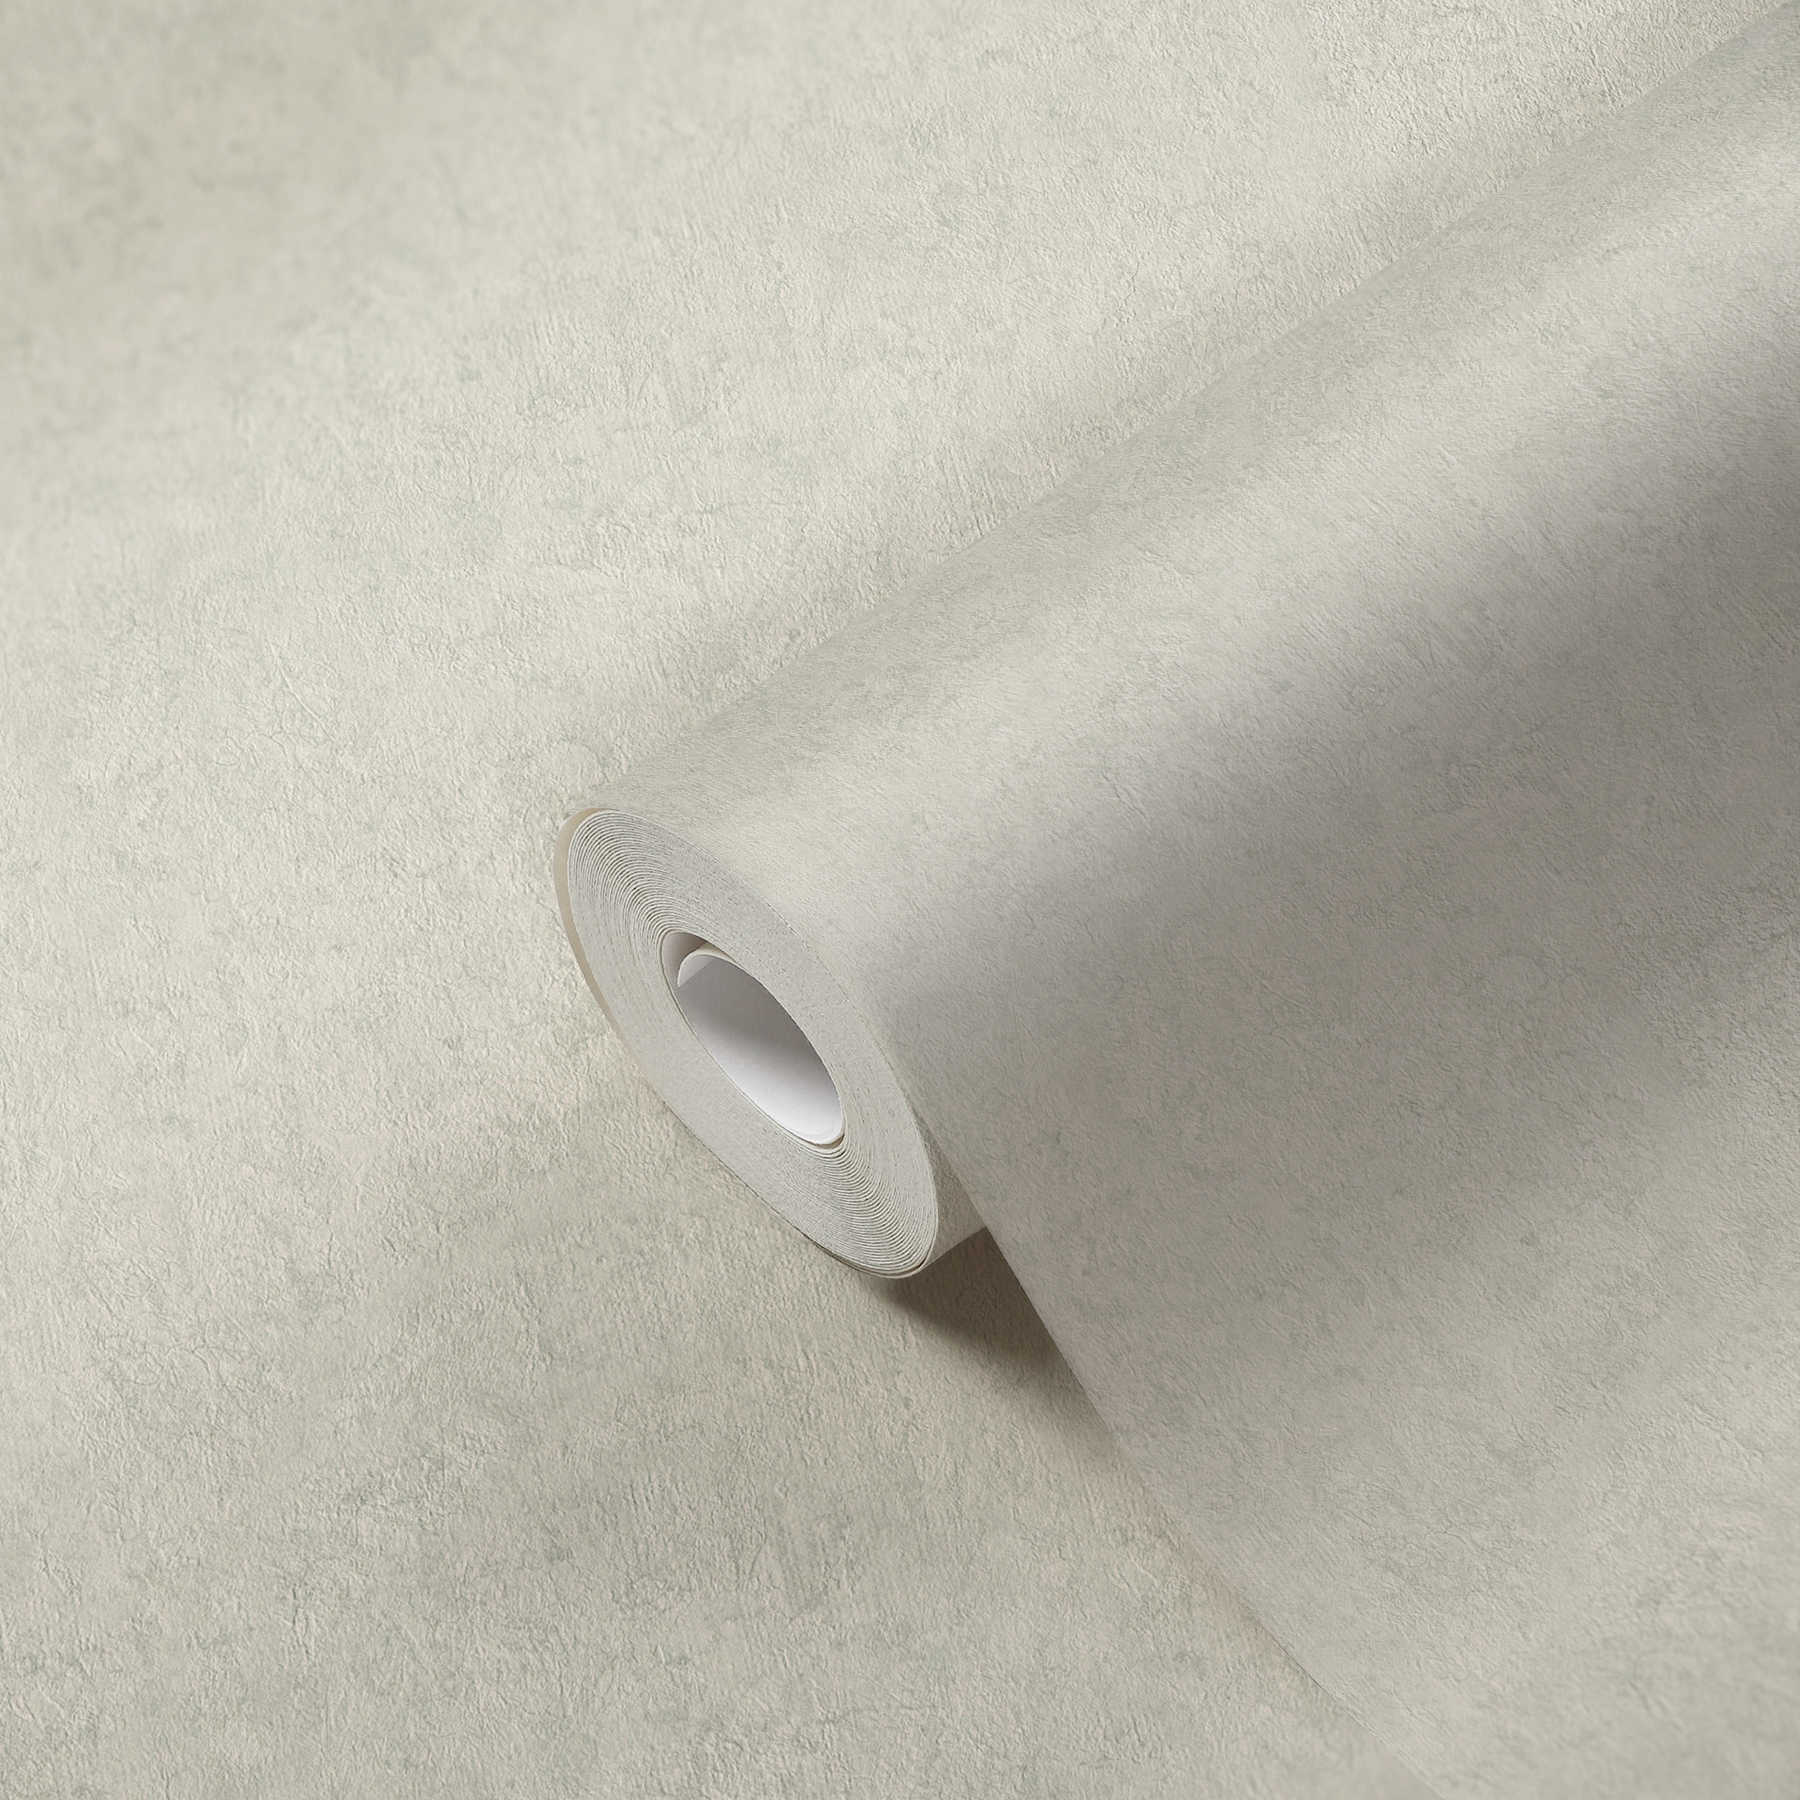             Non-woven wallpaper plain neutral plain wallpaper silk matt - grey
        